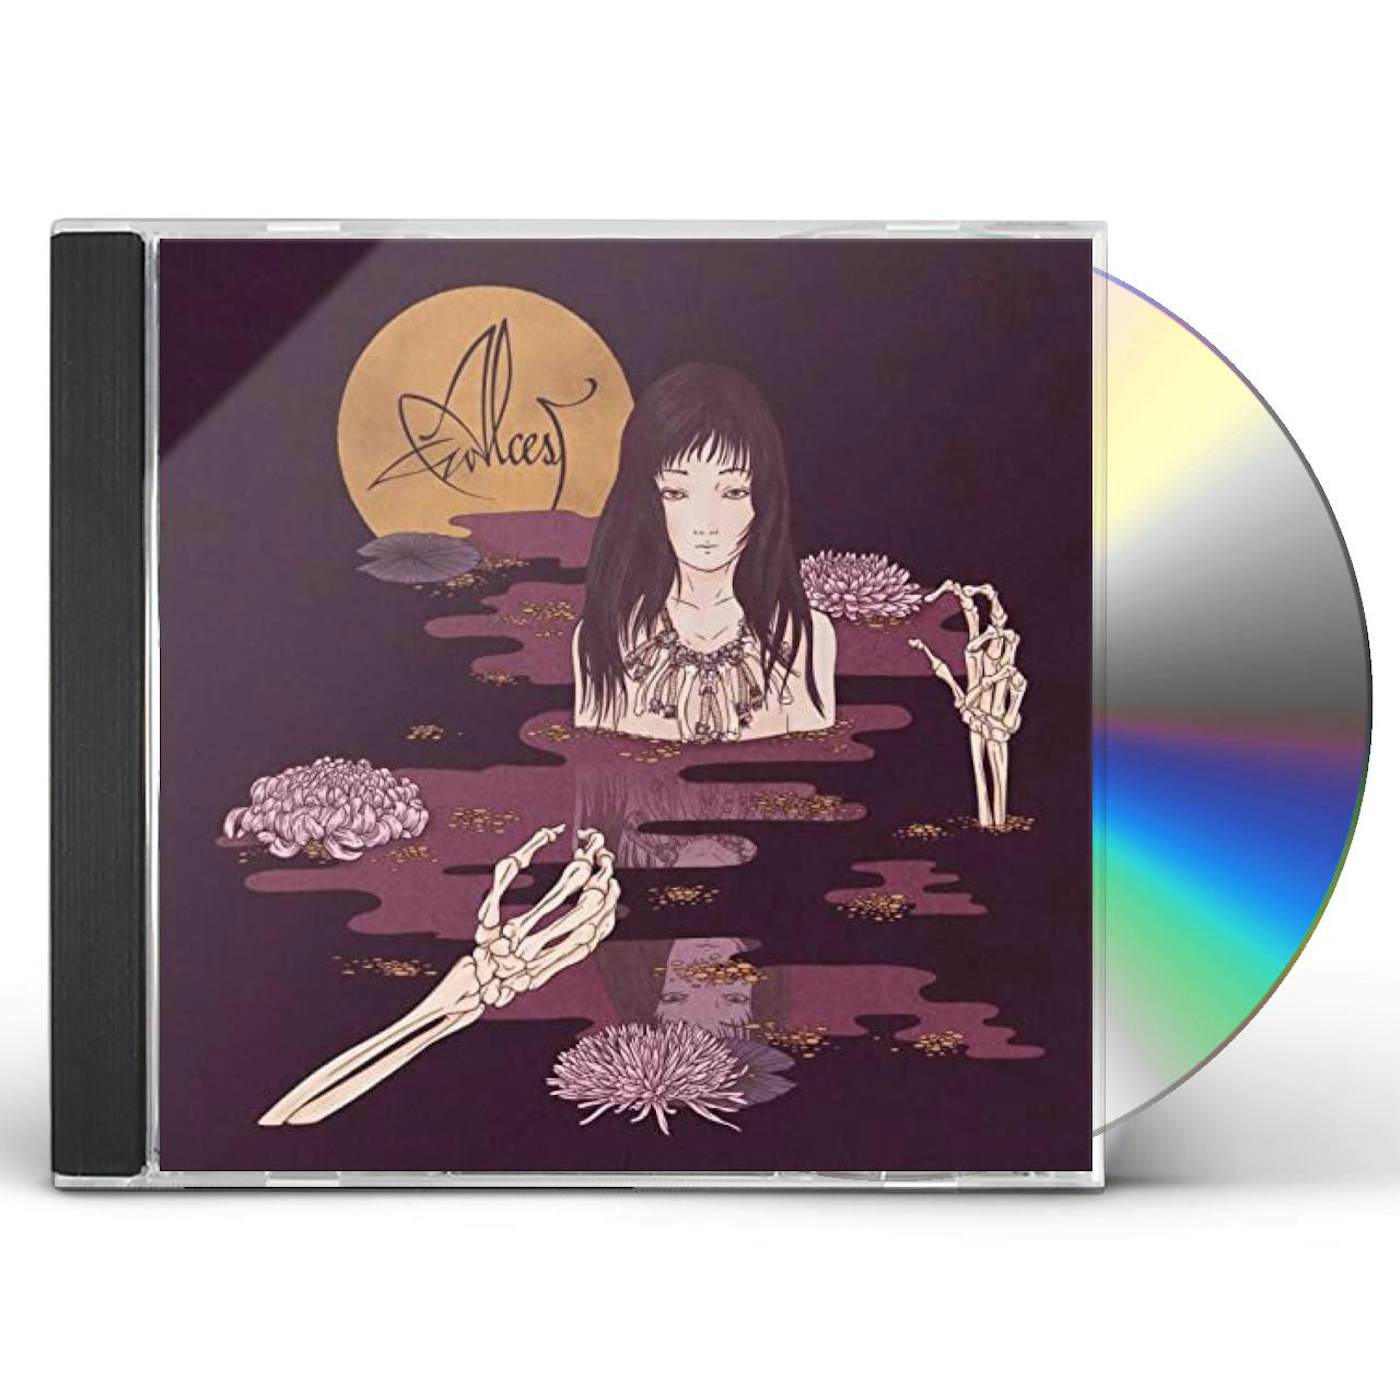 Alcest KODAMA CD